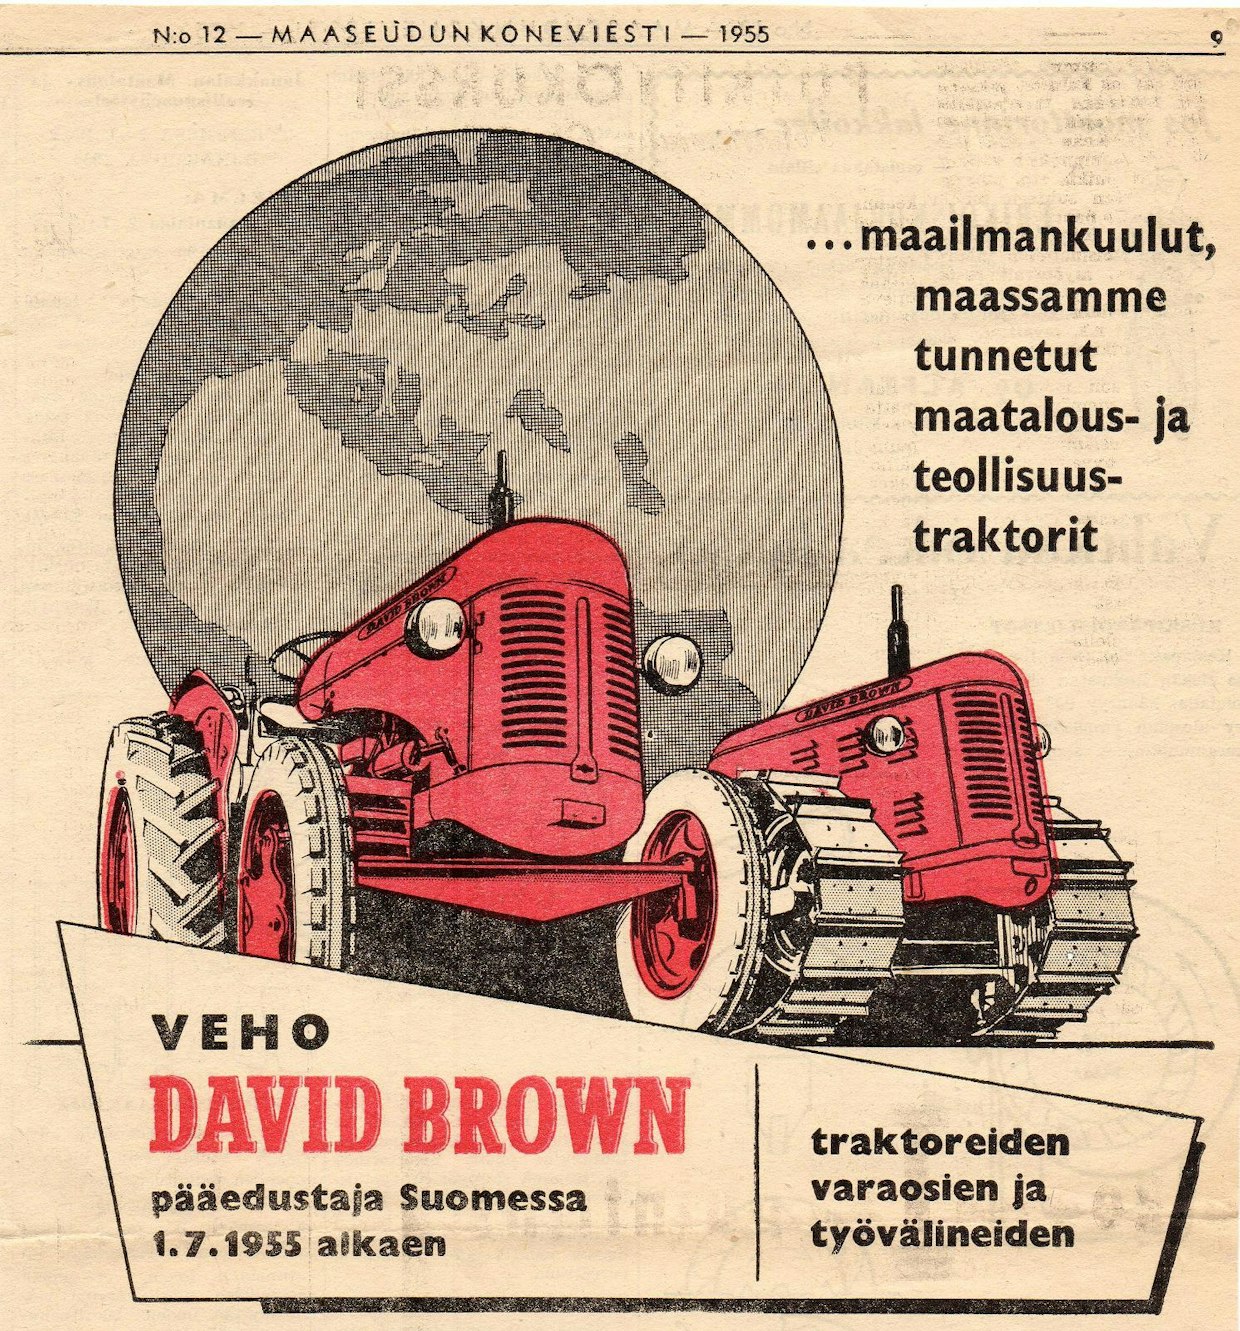 David Brownia markkinoitiin suomalaisille näyttävästi Maaseudun Koneviestissä 1955. Lisäväri ilmoituksessa oli tähän aikaan ylellisyyttä, josta kirjapaino veloitti tuntuvasti.